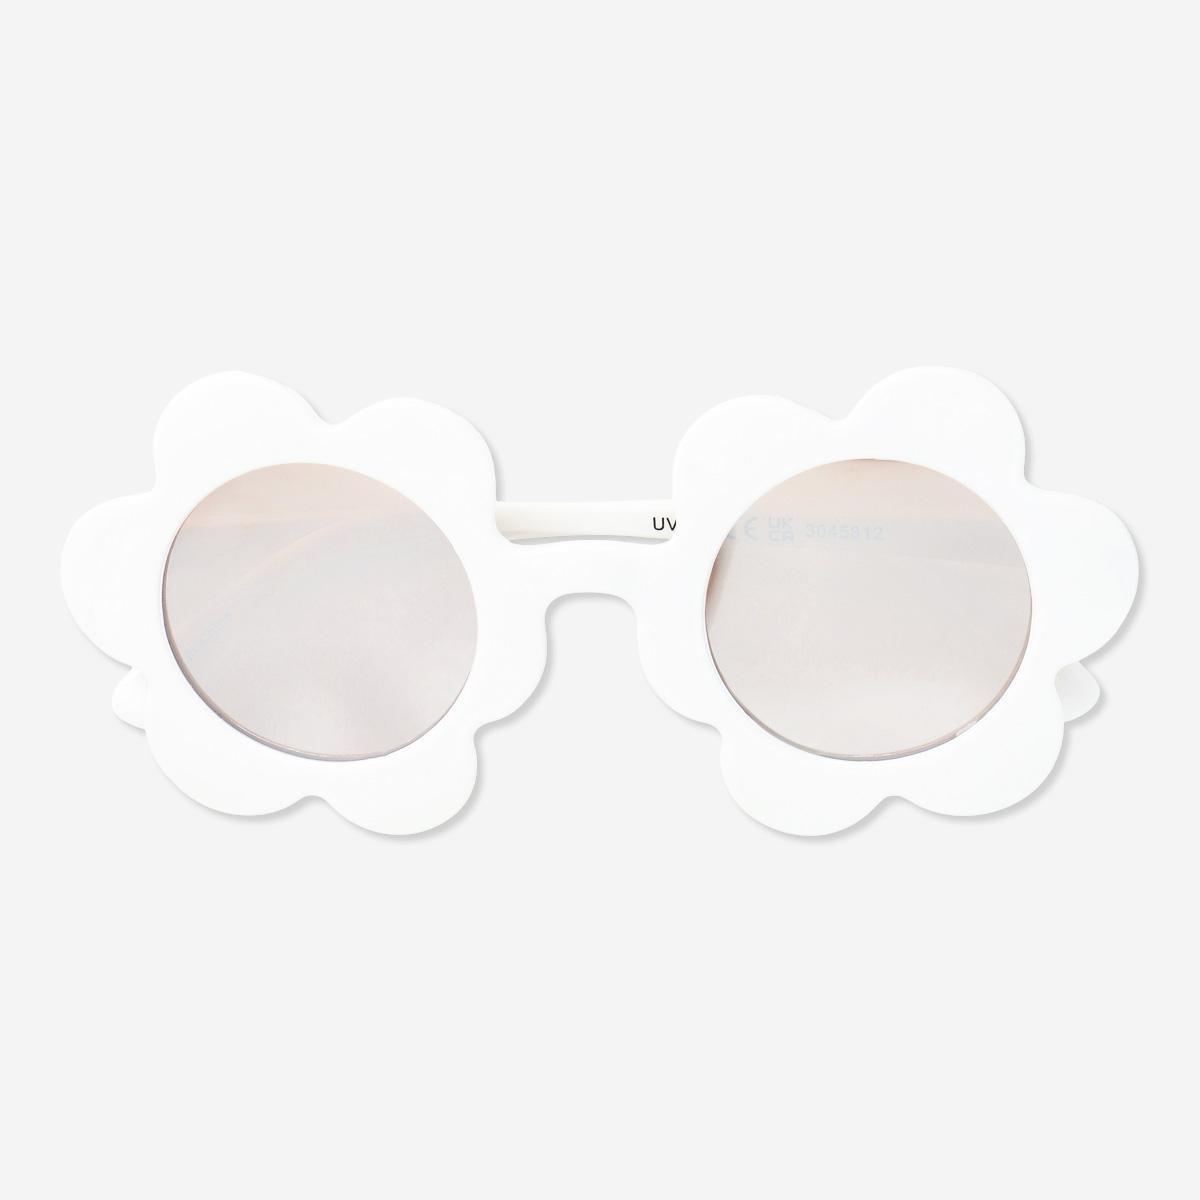 White sunglasses